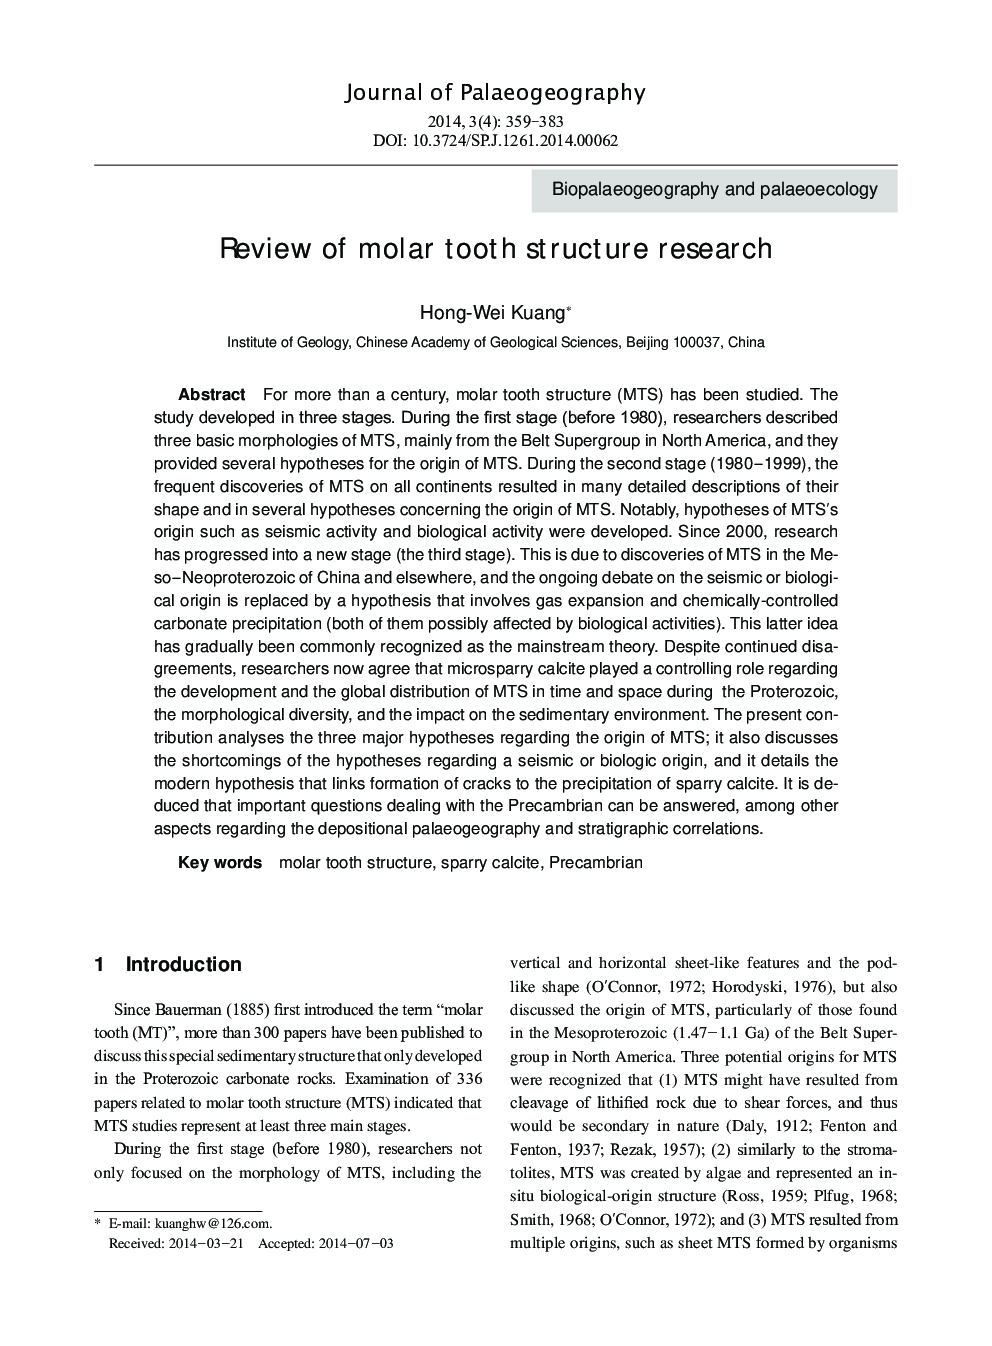 بررسی ساختار دندان مولر 